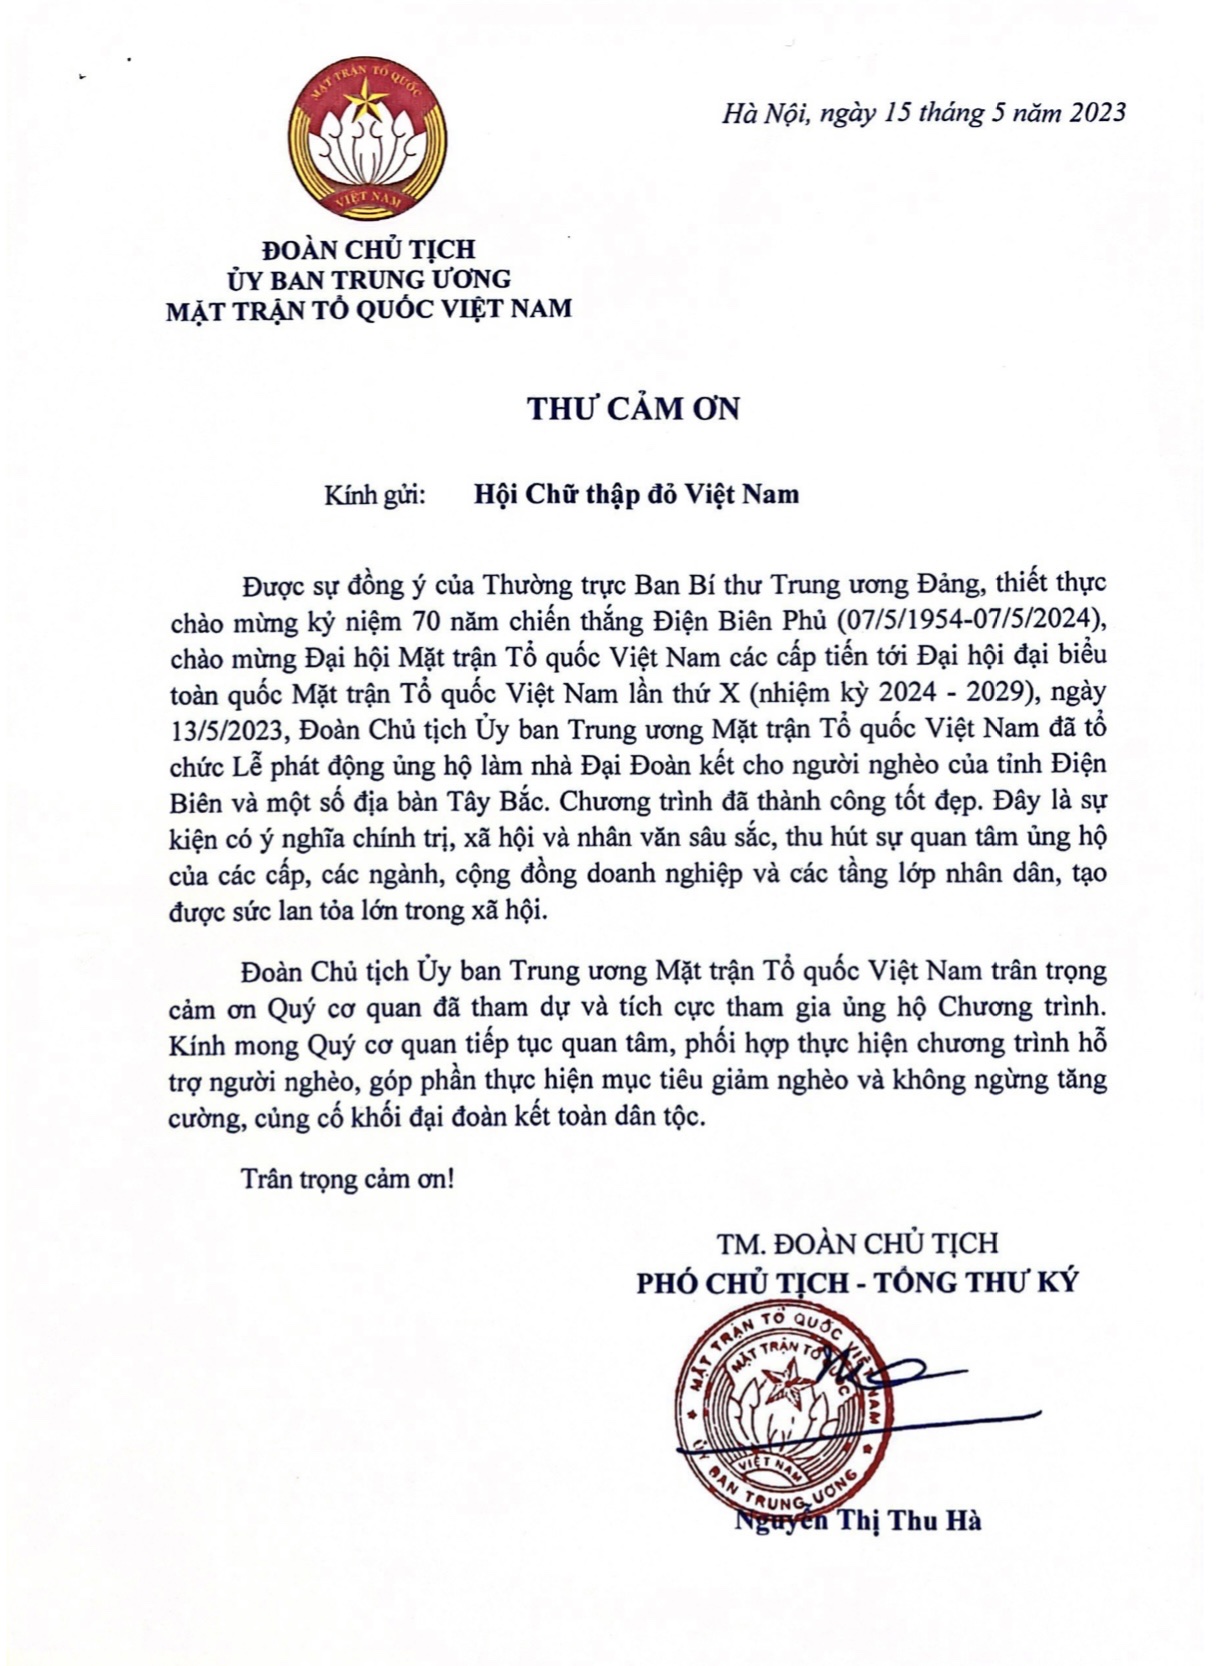 Đoàn Chủ tịch Ủy ban Trung ương Mặt trận Tổ quốc Việt Nam gửi thư cảm ơn Hội Chữ thập đỏ Việt Nam